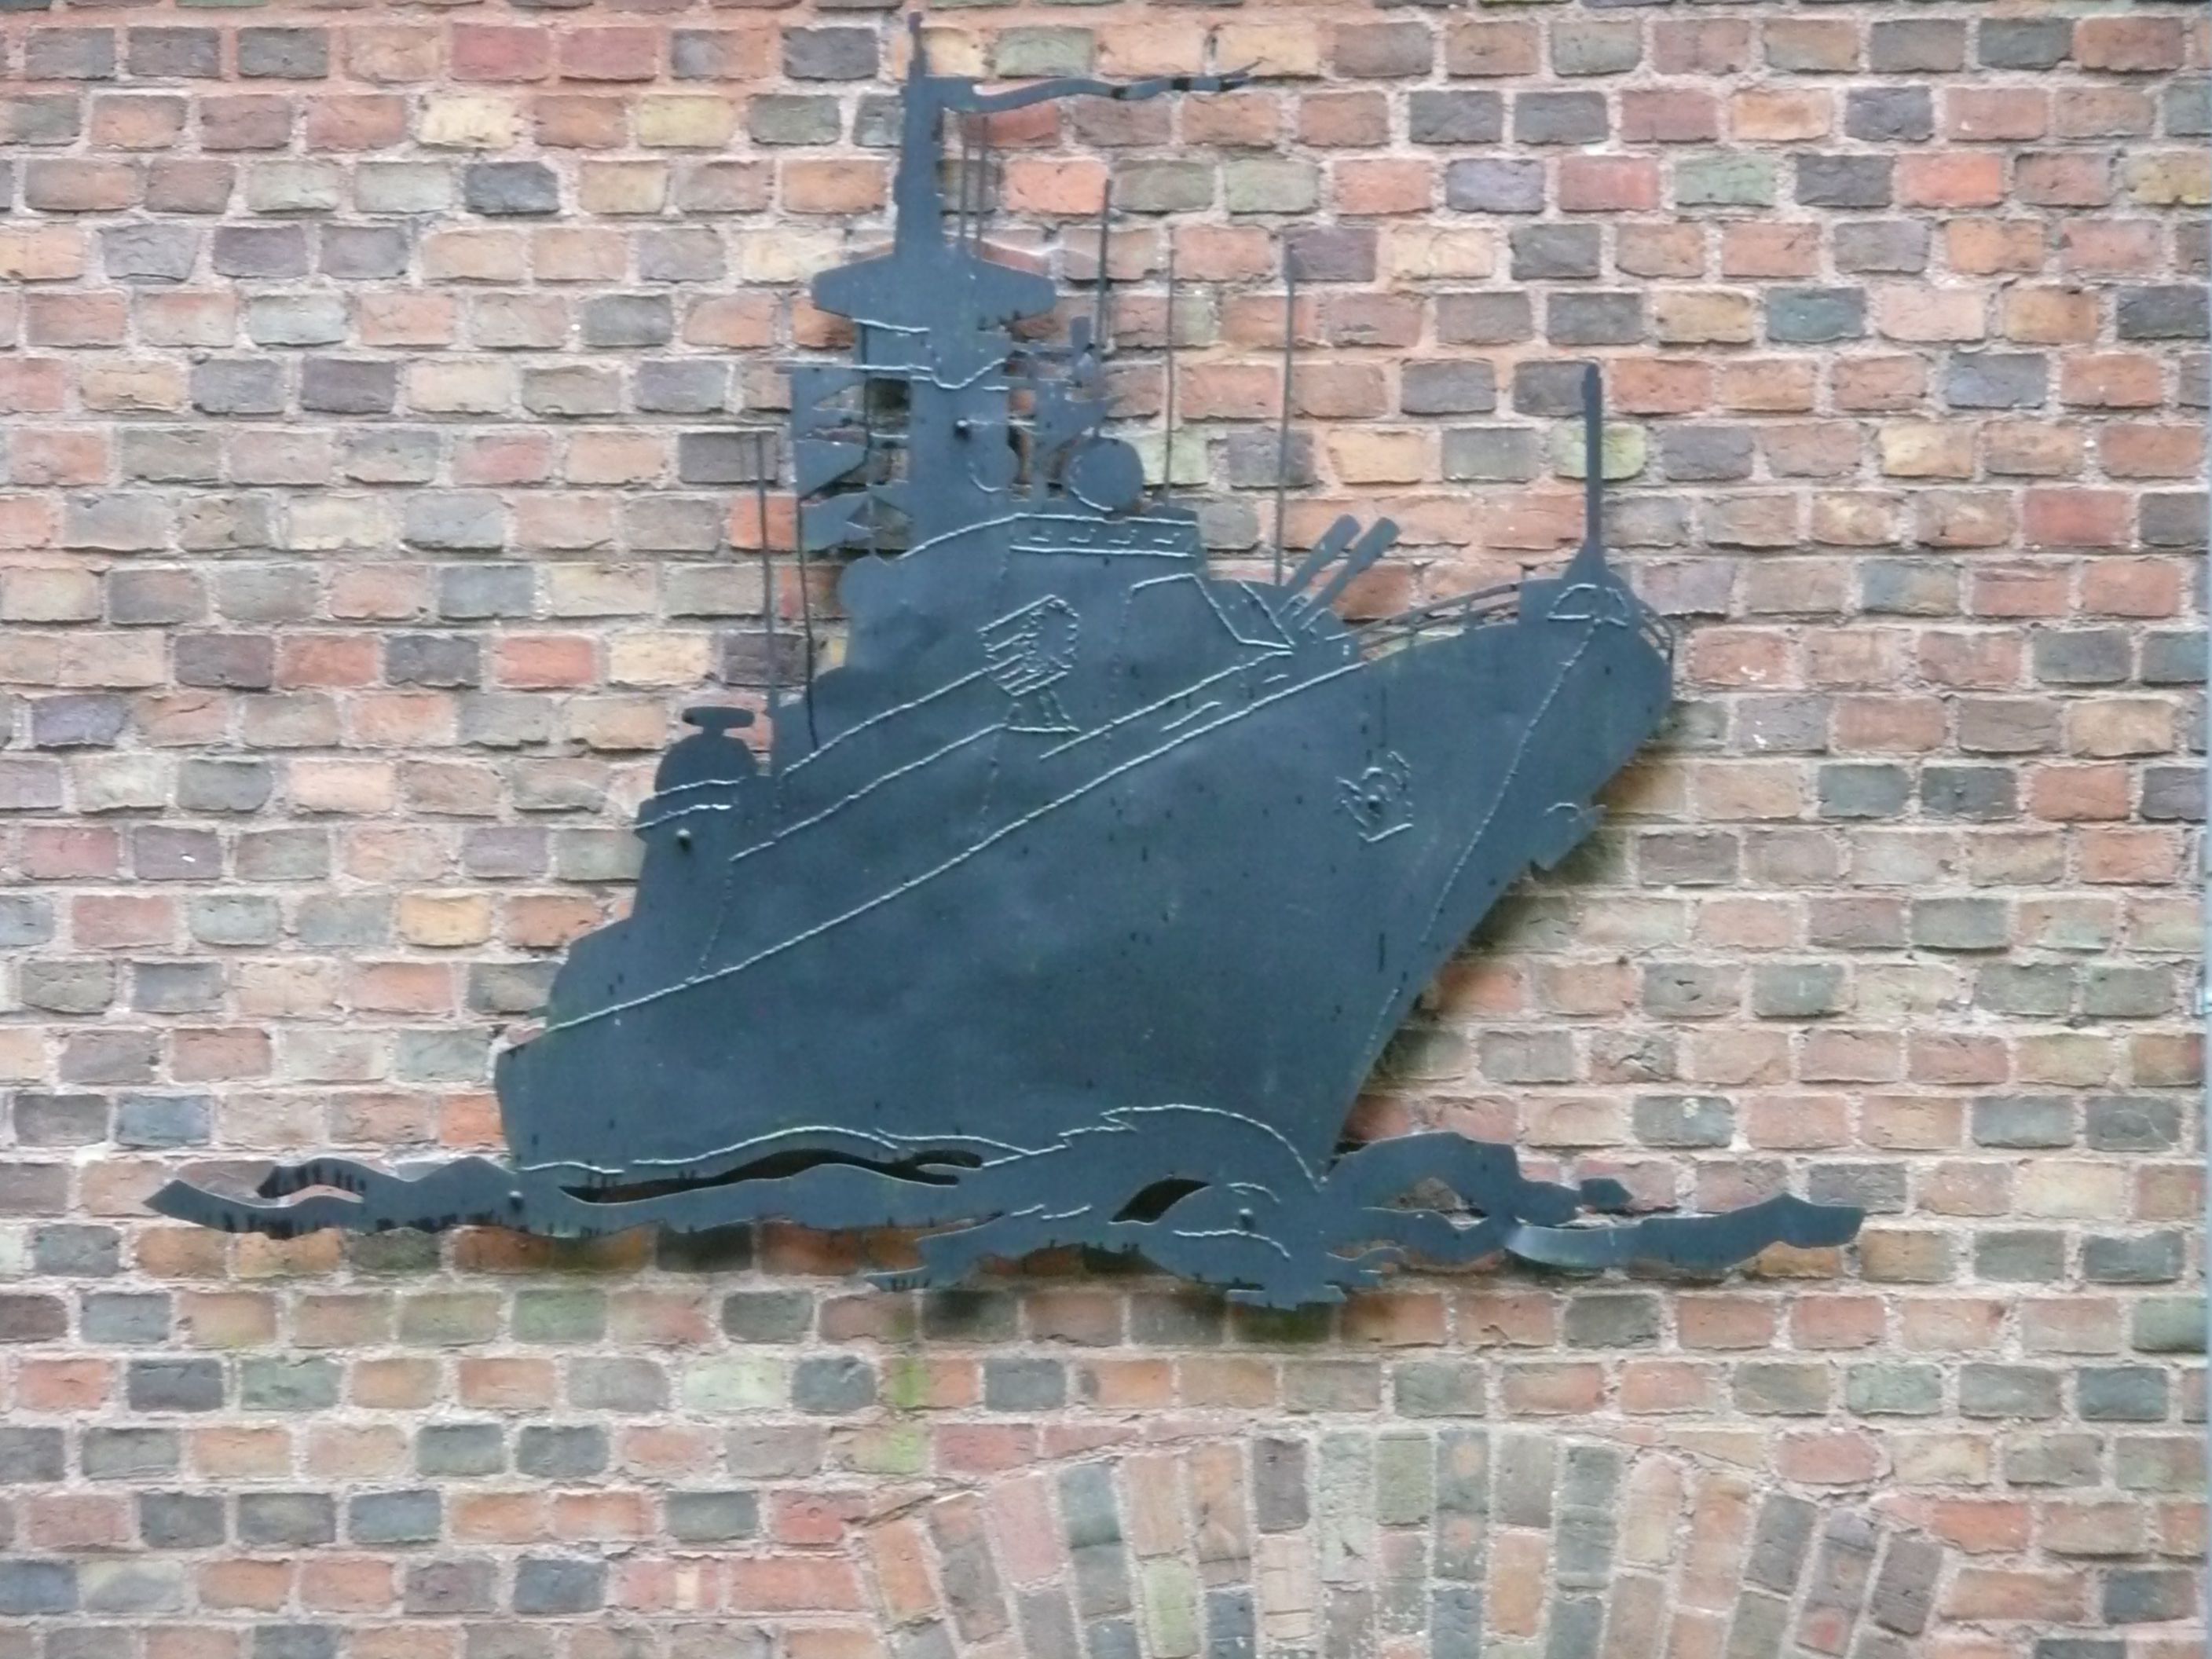 Bild 5 Marinemuseum in Stralsund/Insel Dänholm